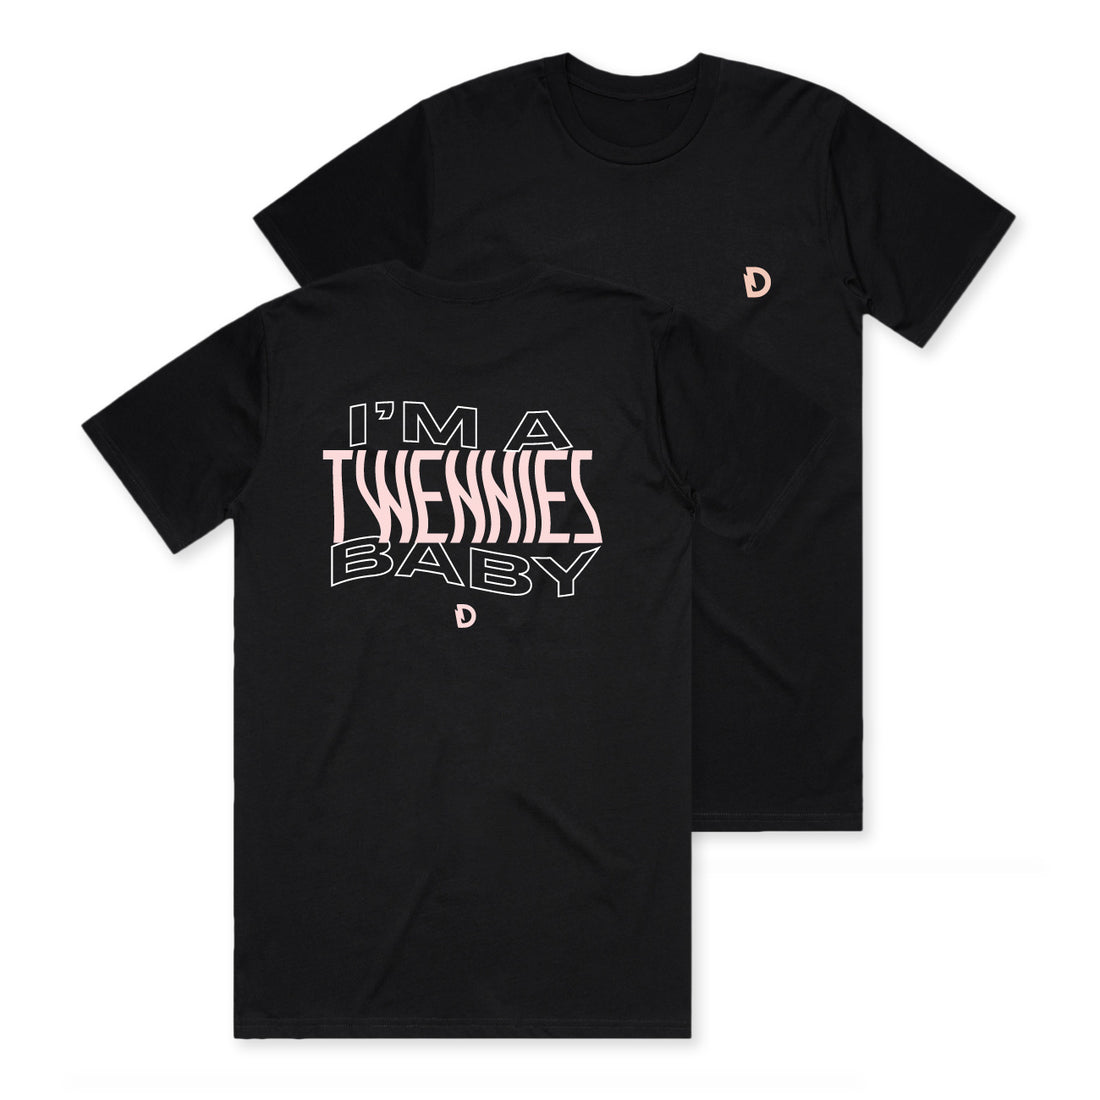 Dragonette - Twennies T-Shirt